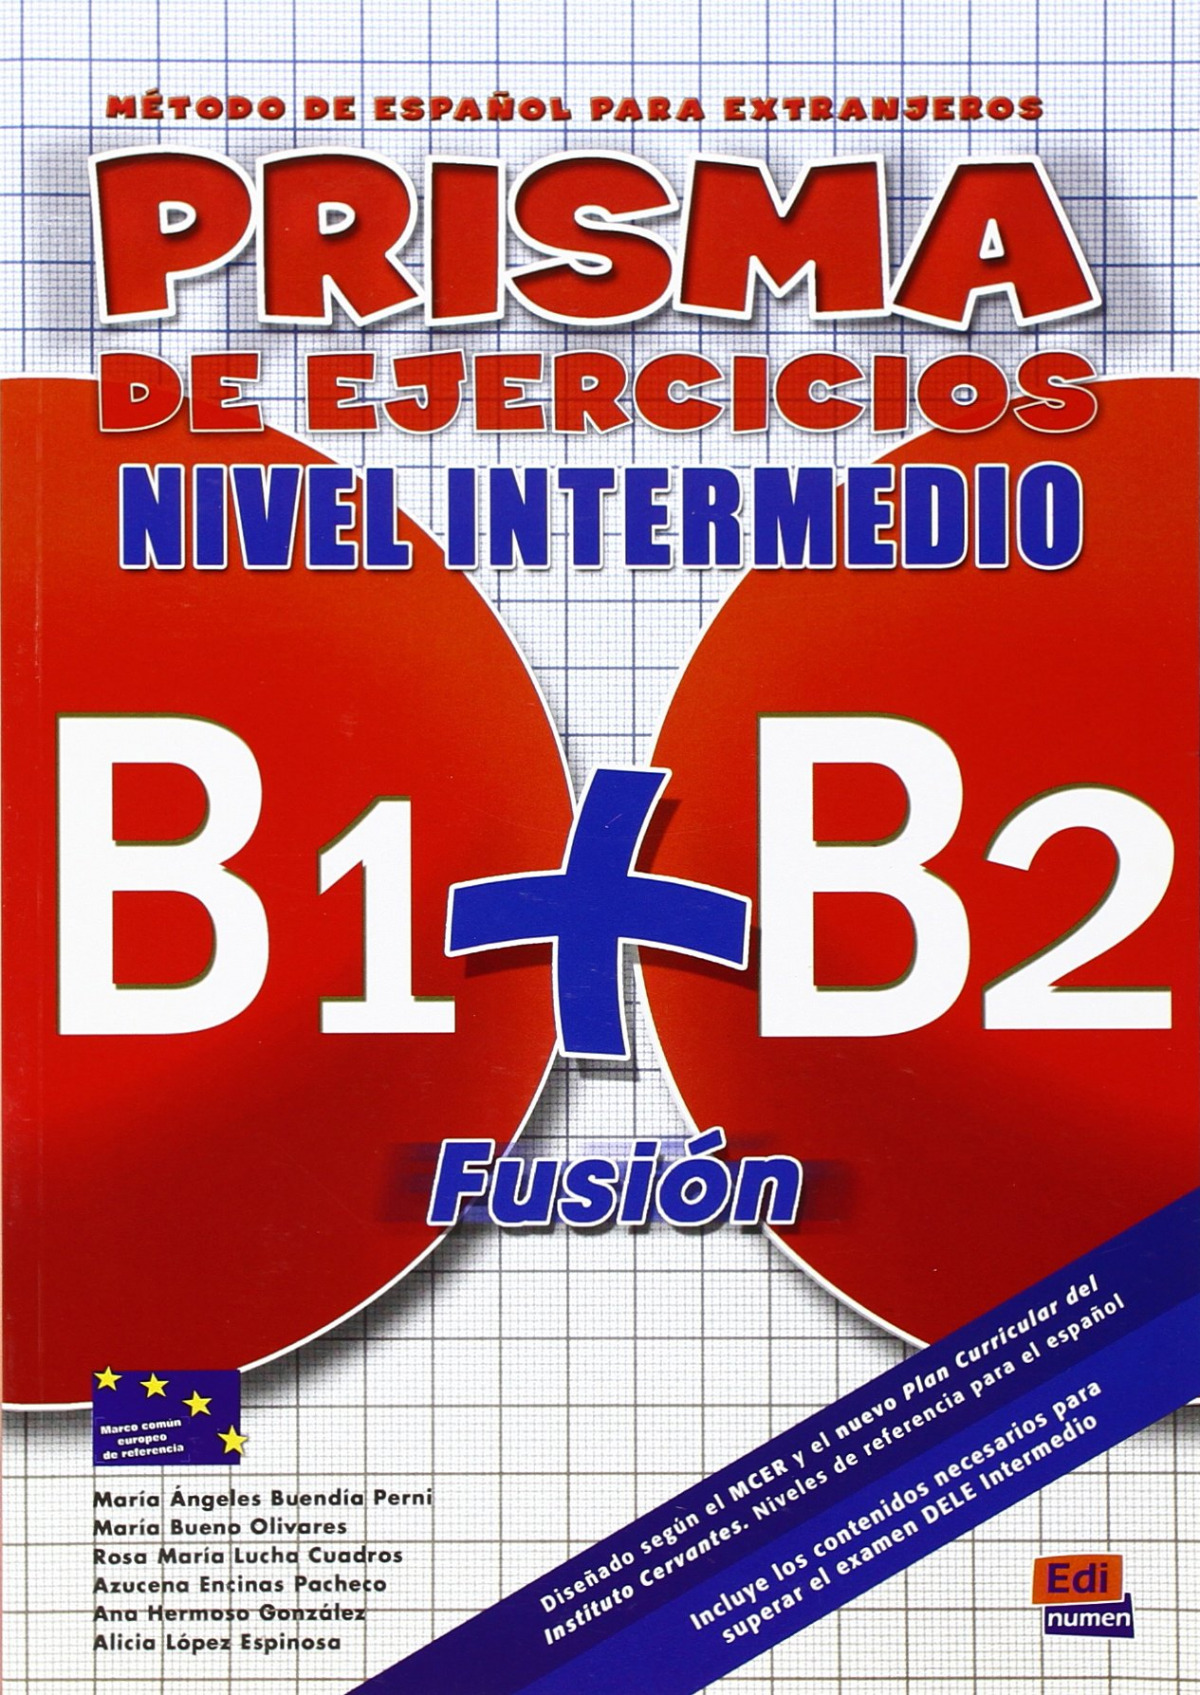 Prisma fusion b1+b2 ejercicios n.intermedio - Aa.Vv.